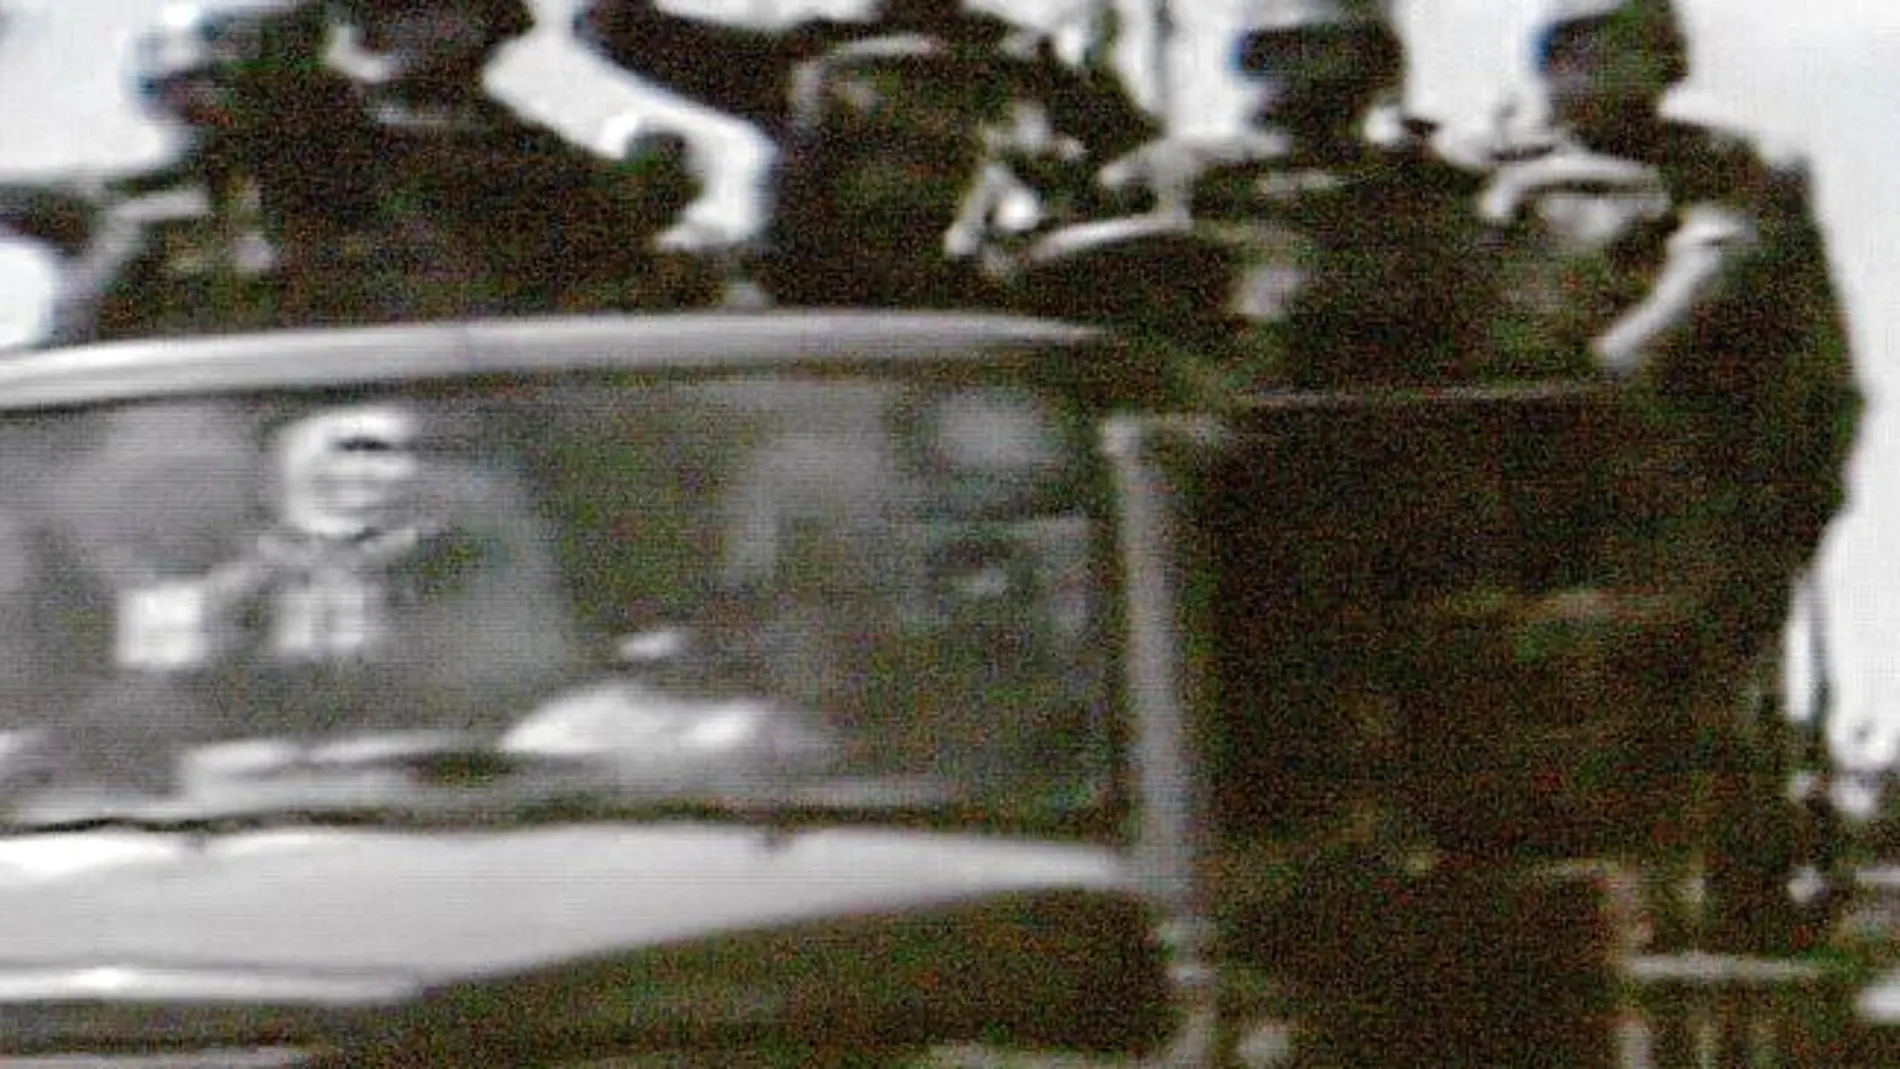 Una imagen de la televisión siria Al Arabiya muestra a los soldados entrando en Yisr al Shugur en un vehículo militar